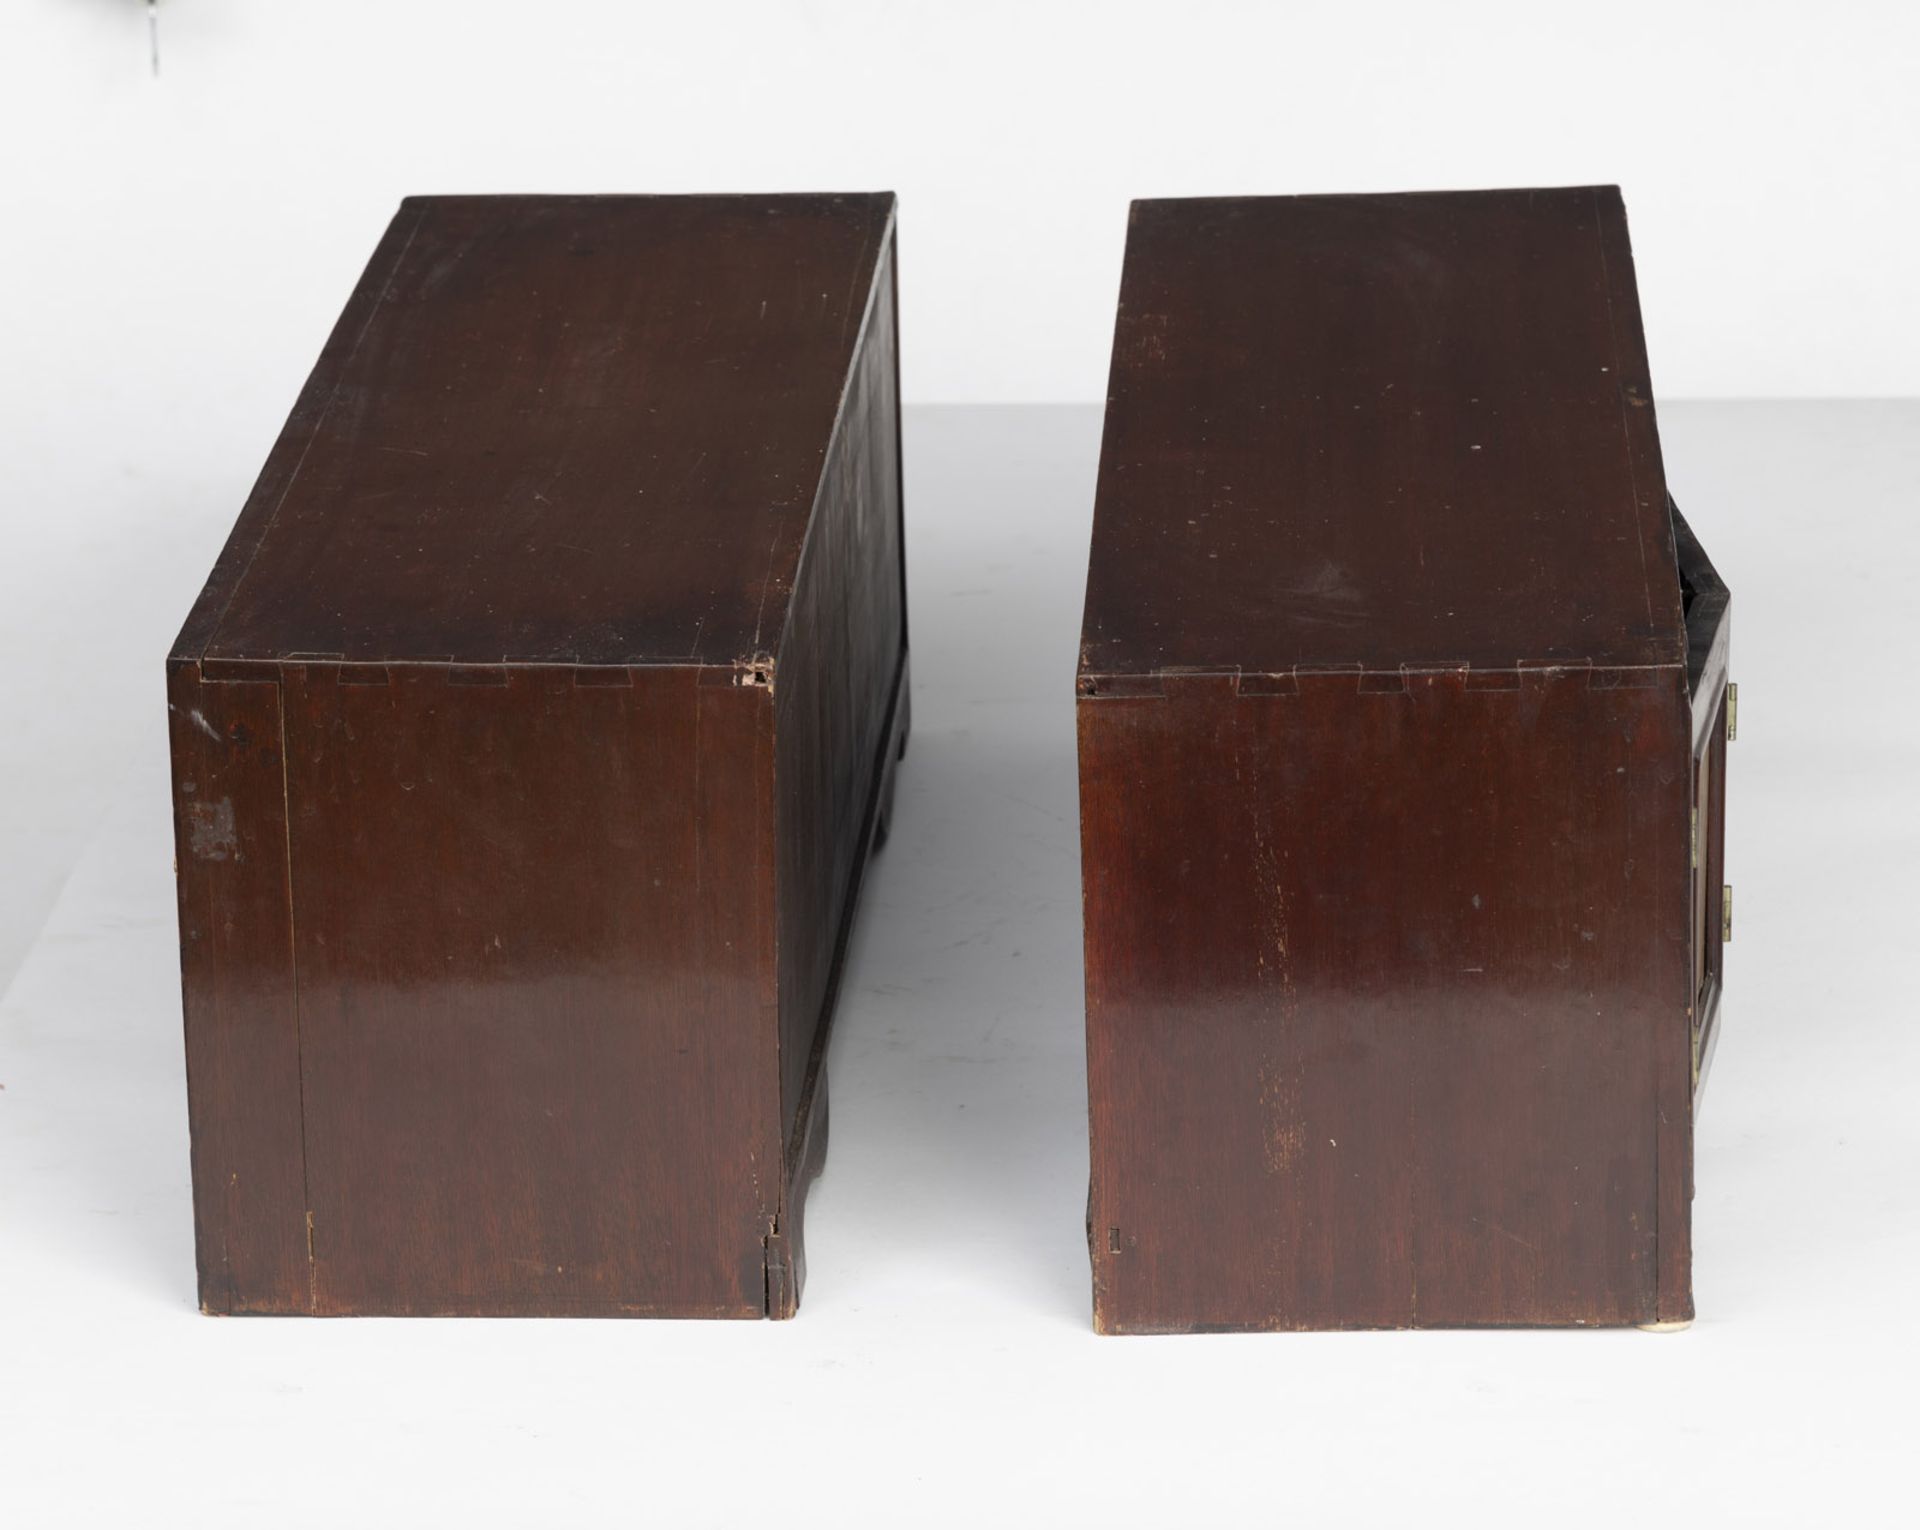 Paar flache Holz-Schränke (mungab), jeweils mit zweiteiligen klappbaren Türen, mit Marmorpaneelen e - Bild 5 aus 8